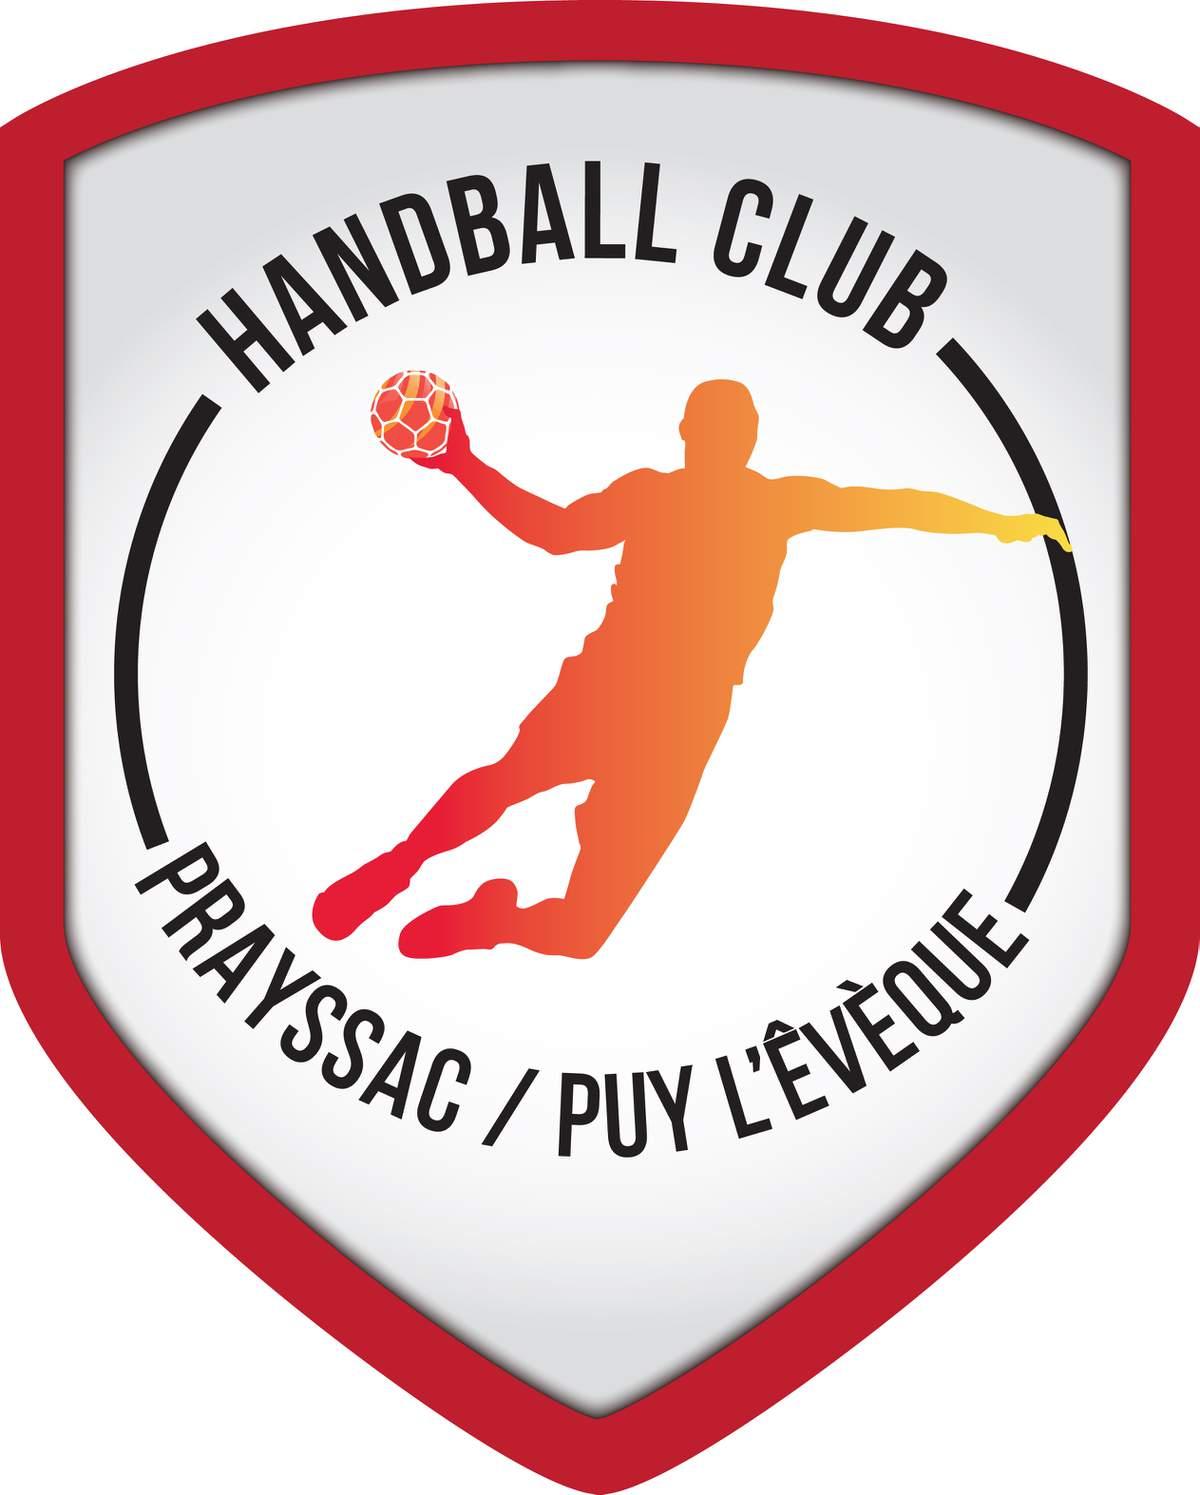 Handball logo